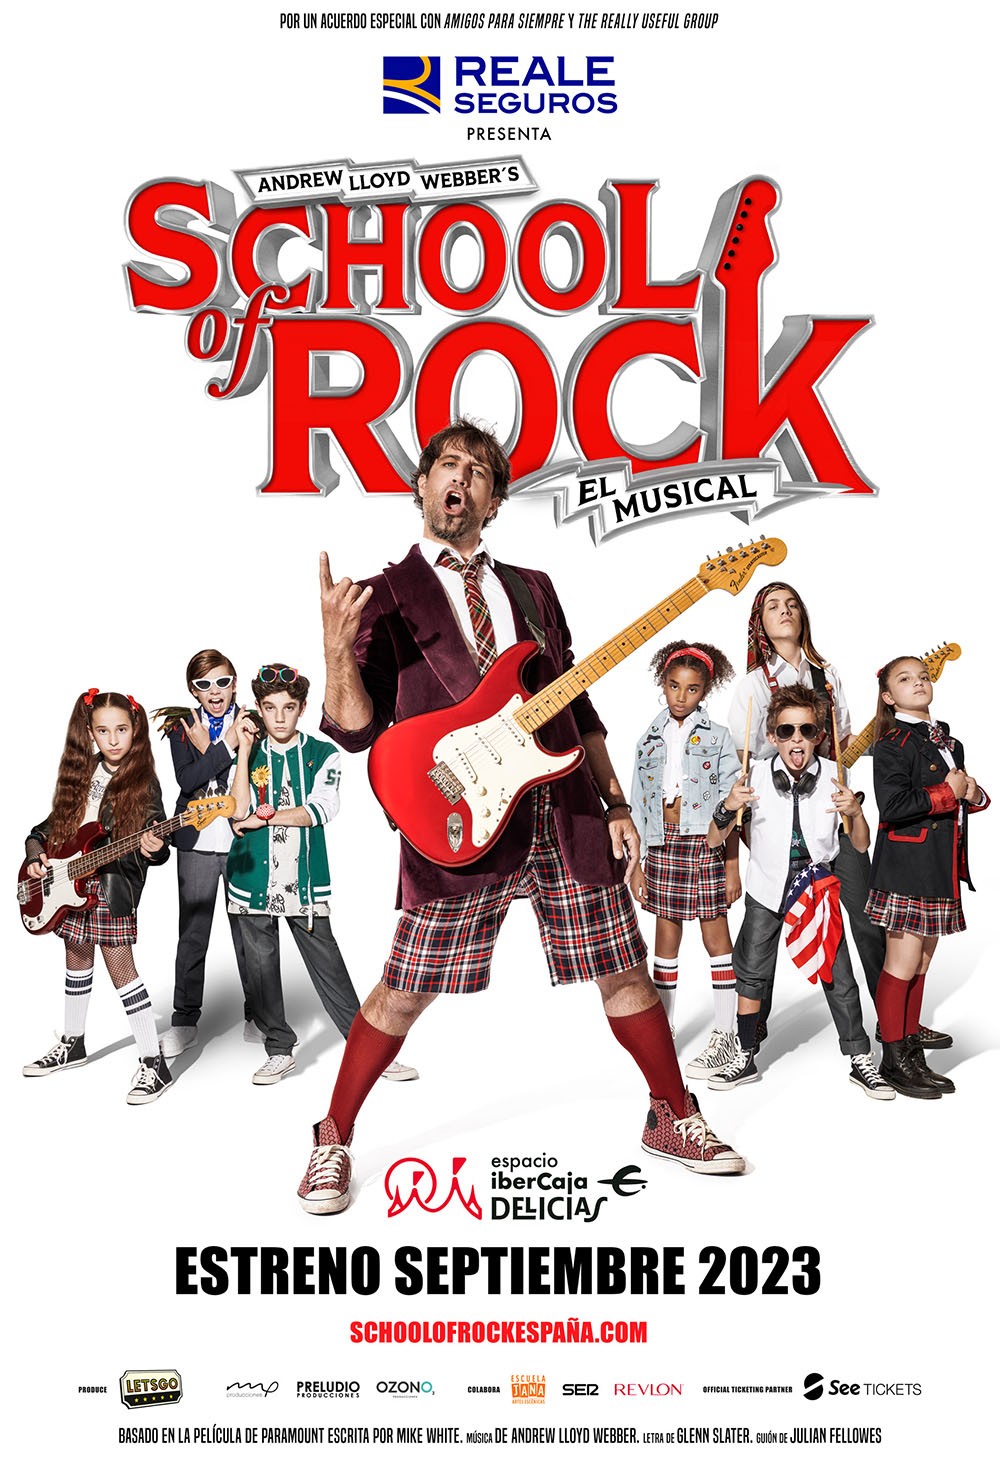 ‘School of Rock’ culmina su primera semana de representaciones en Madrid con sold out